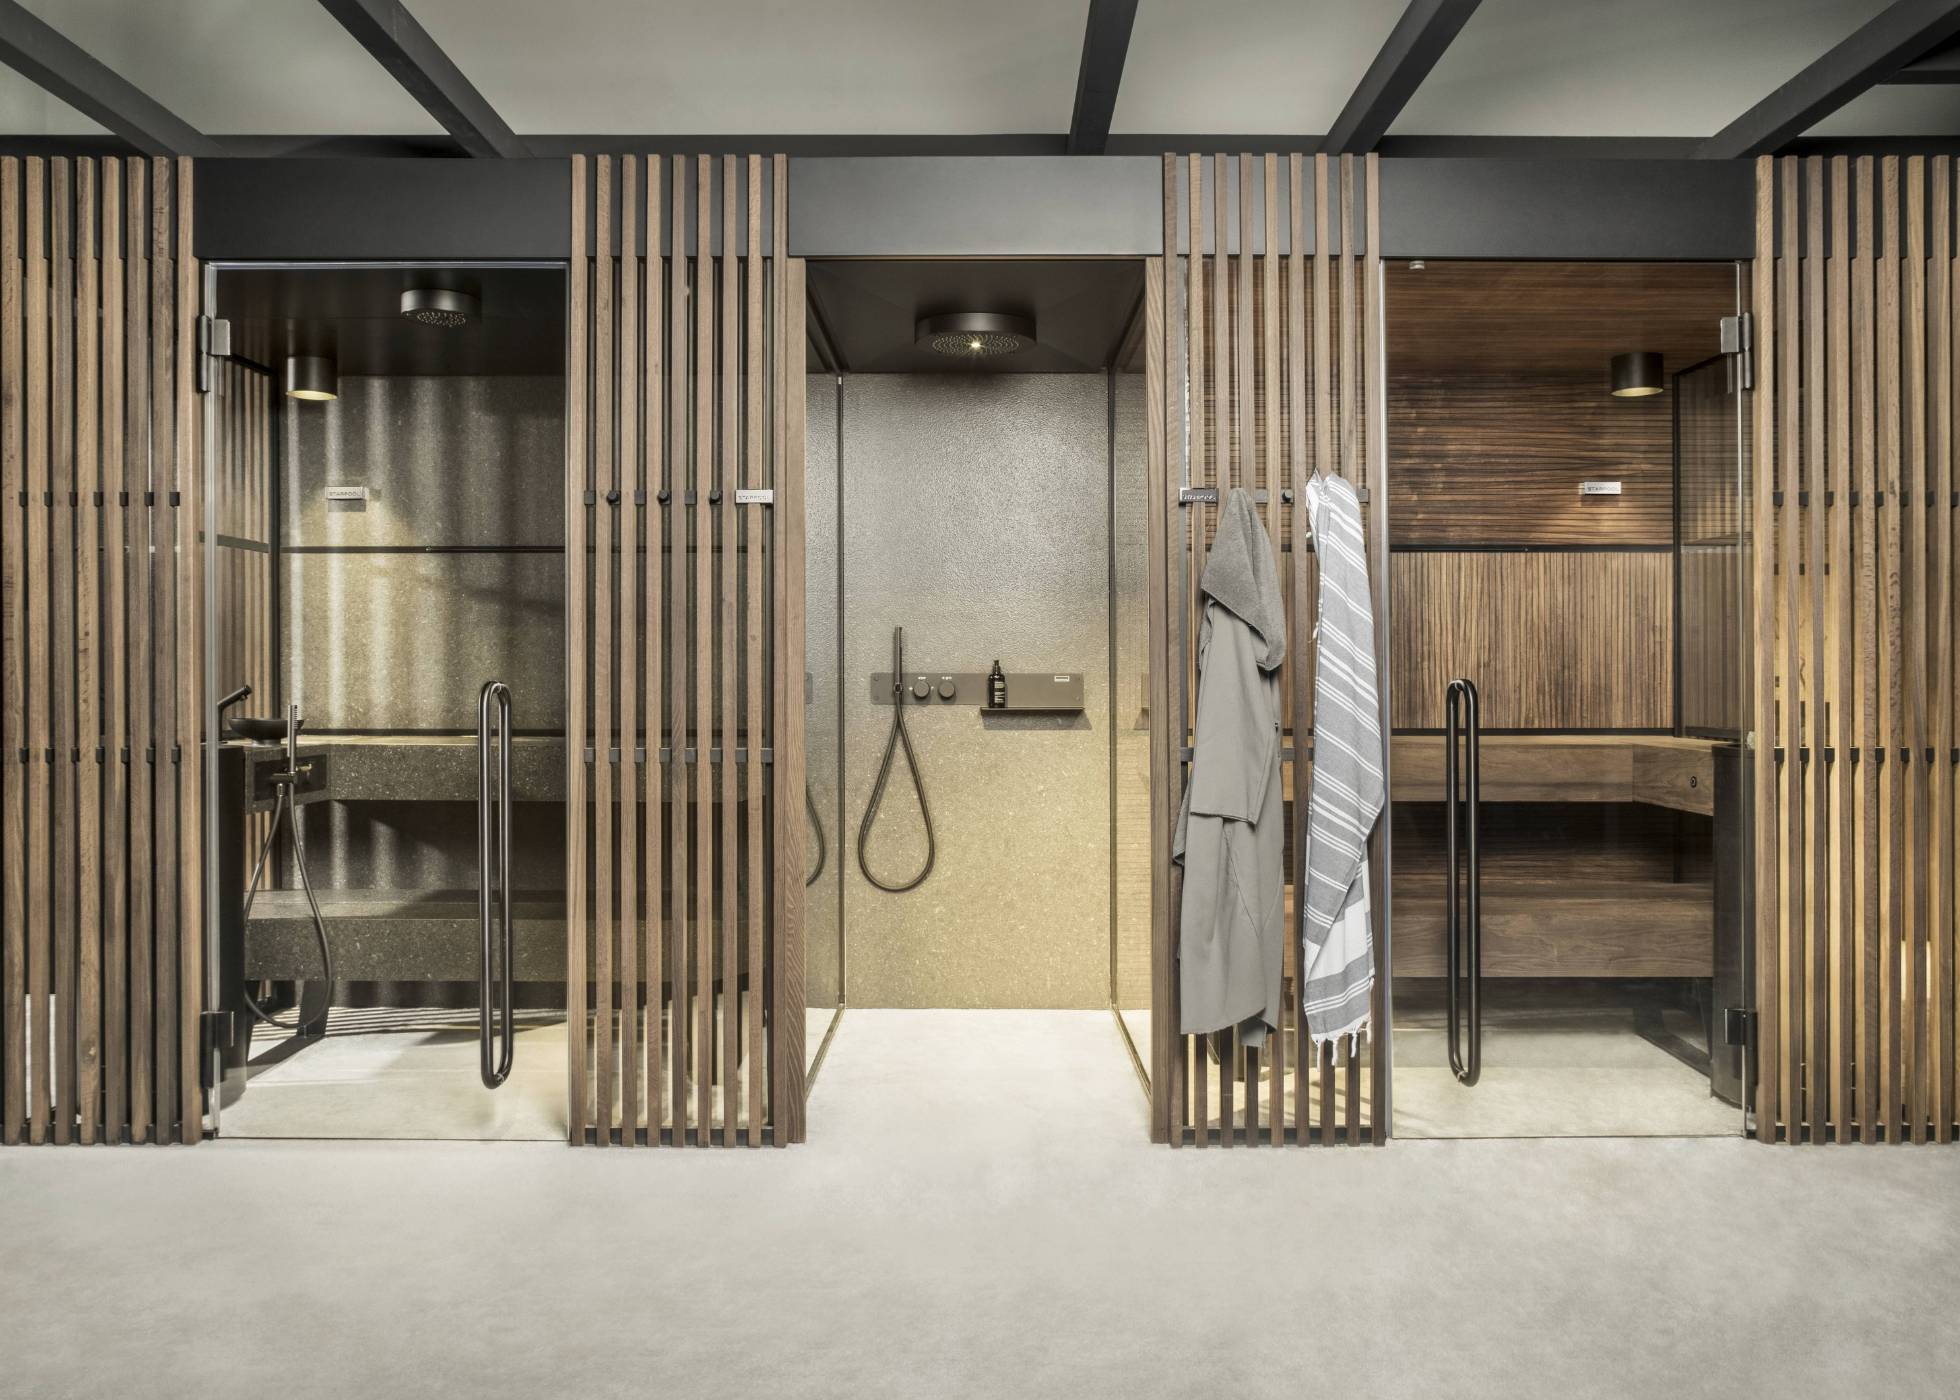 Shade Collection, la soluzione Starpool per il benessere privato in casa con finnish sauna, steam room e shower